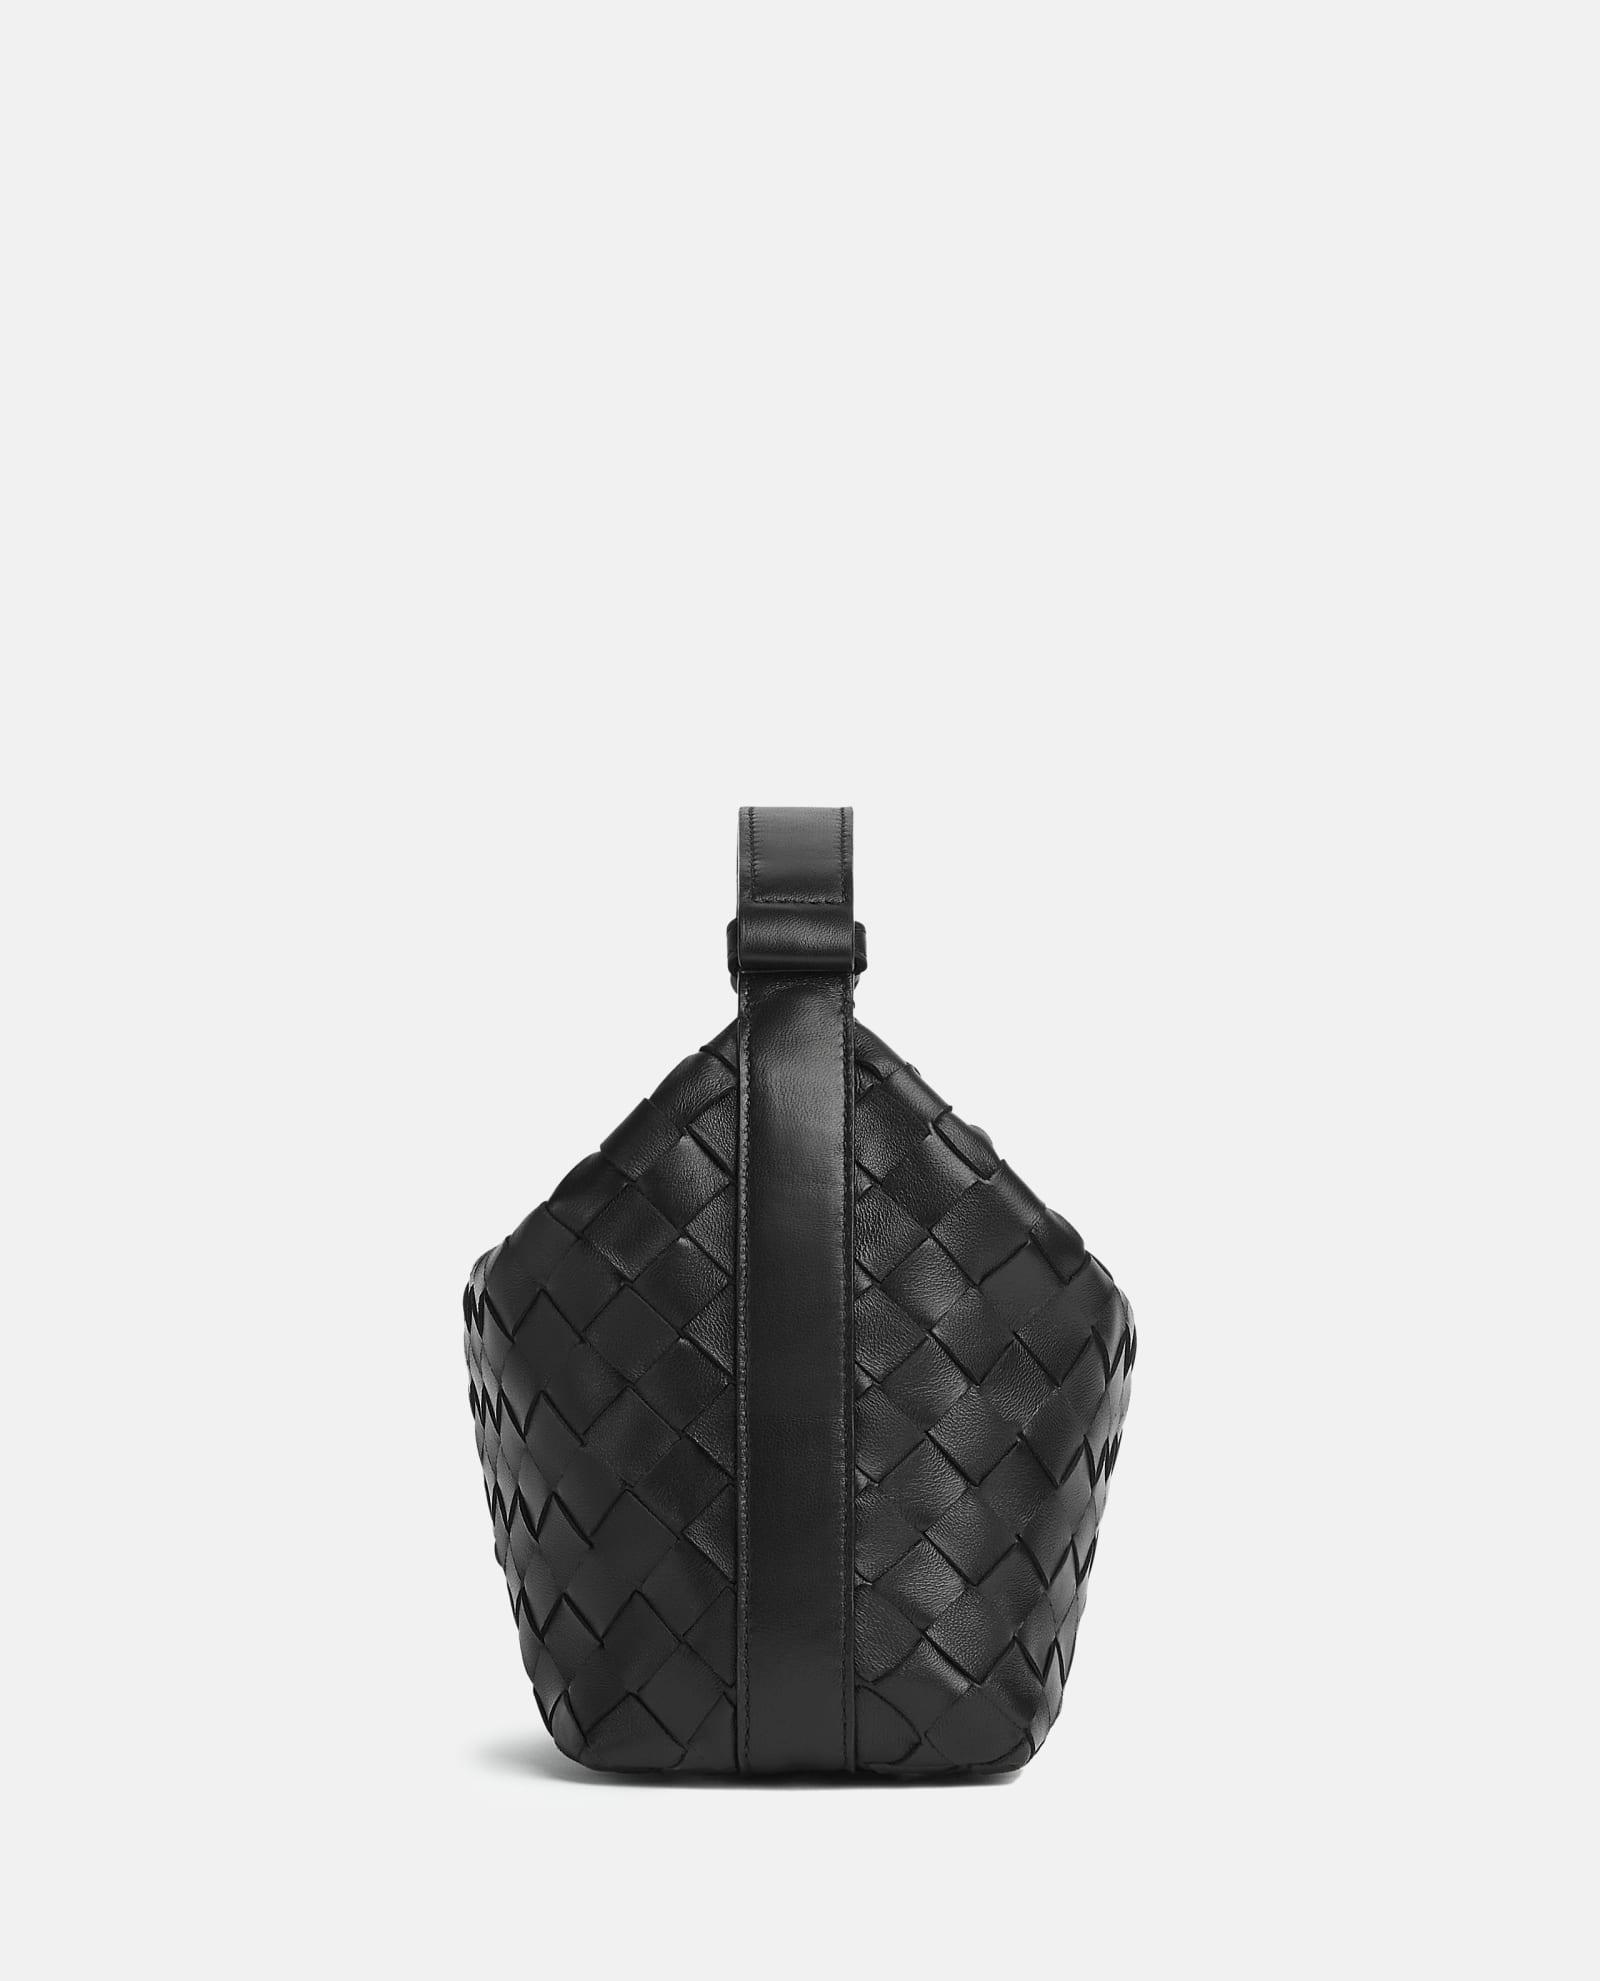 Bottega Veneta Hop Small Shoulder Bag - Black/Gold